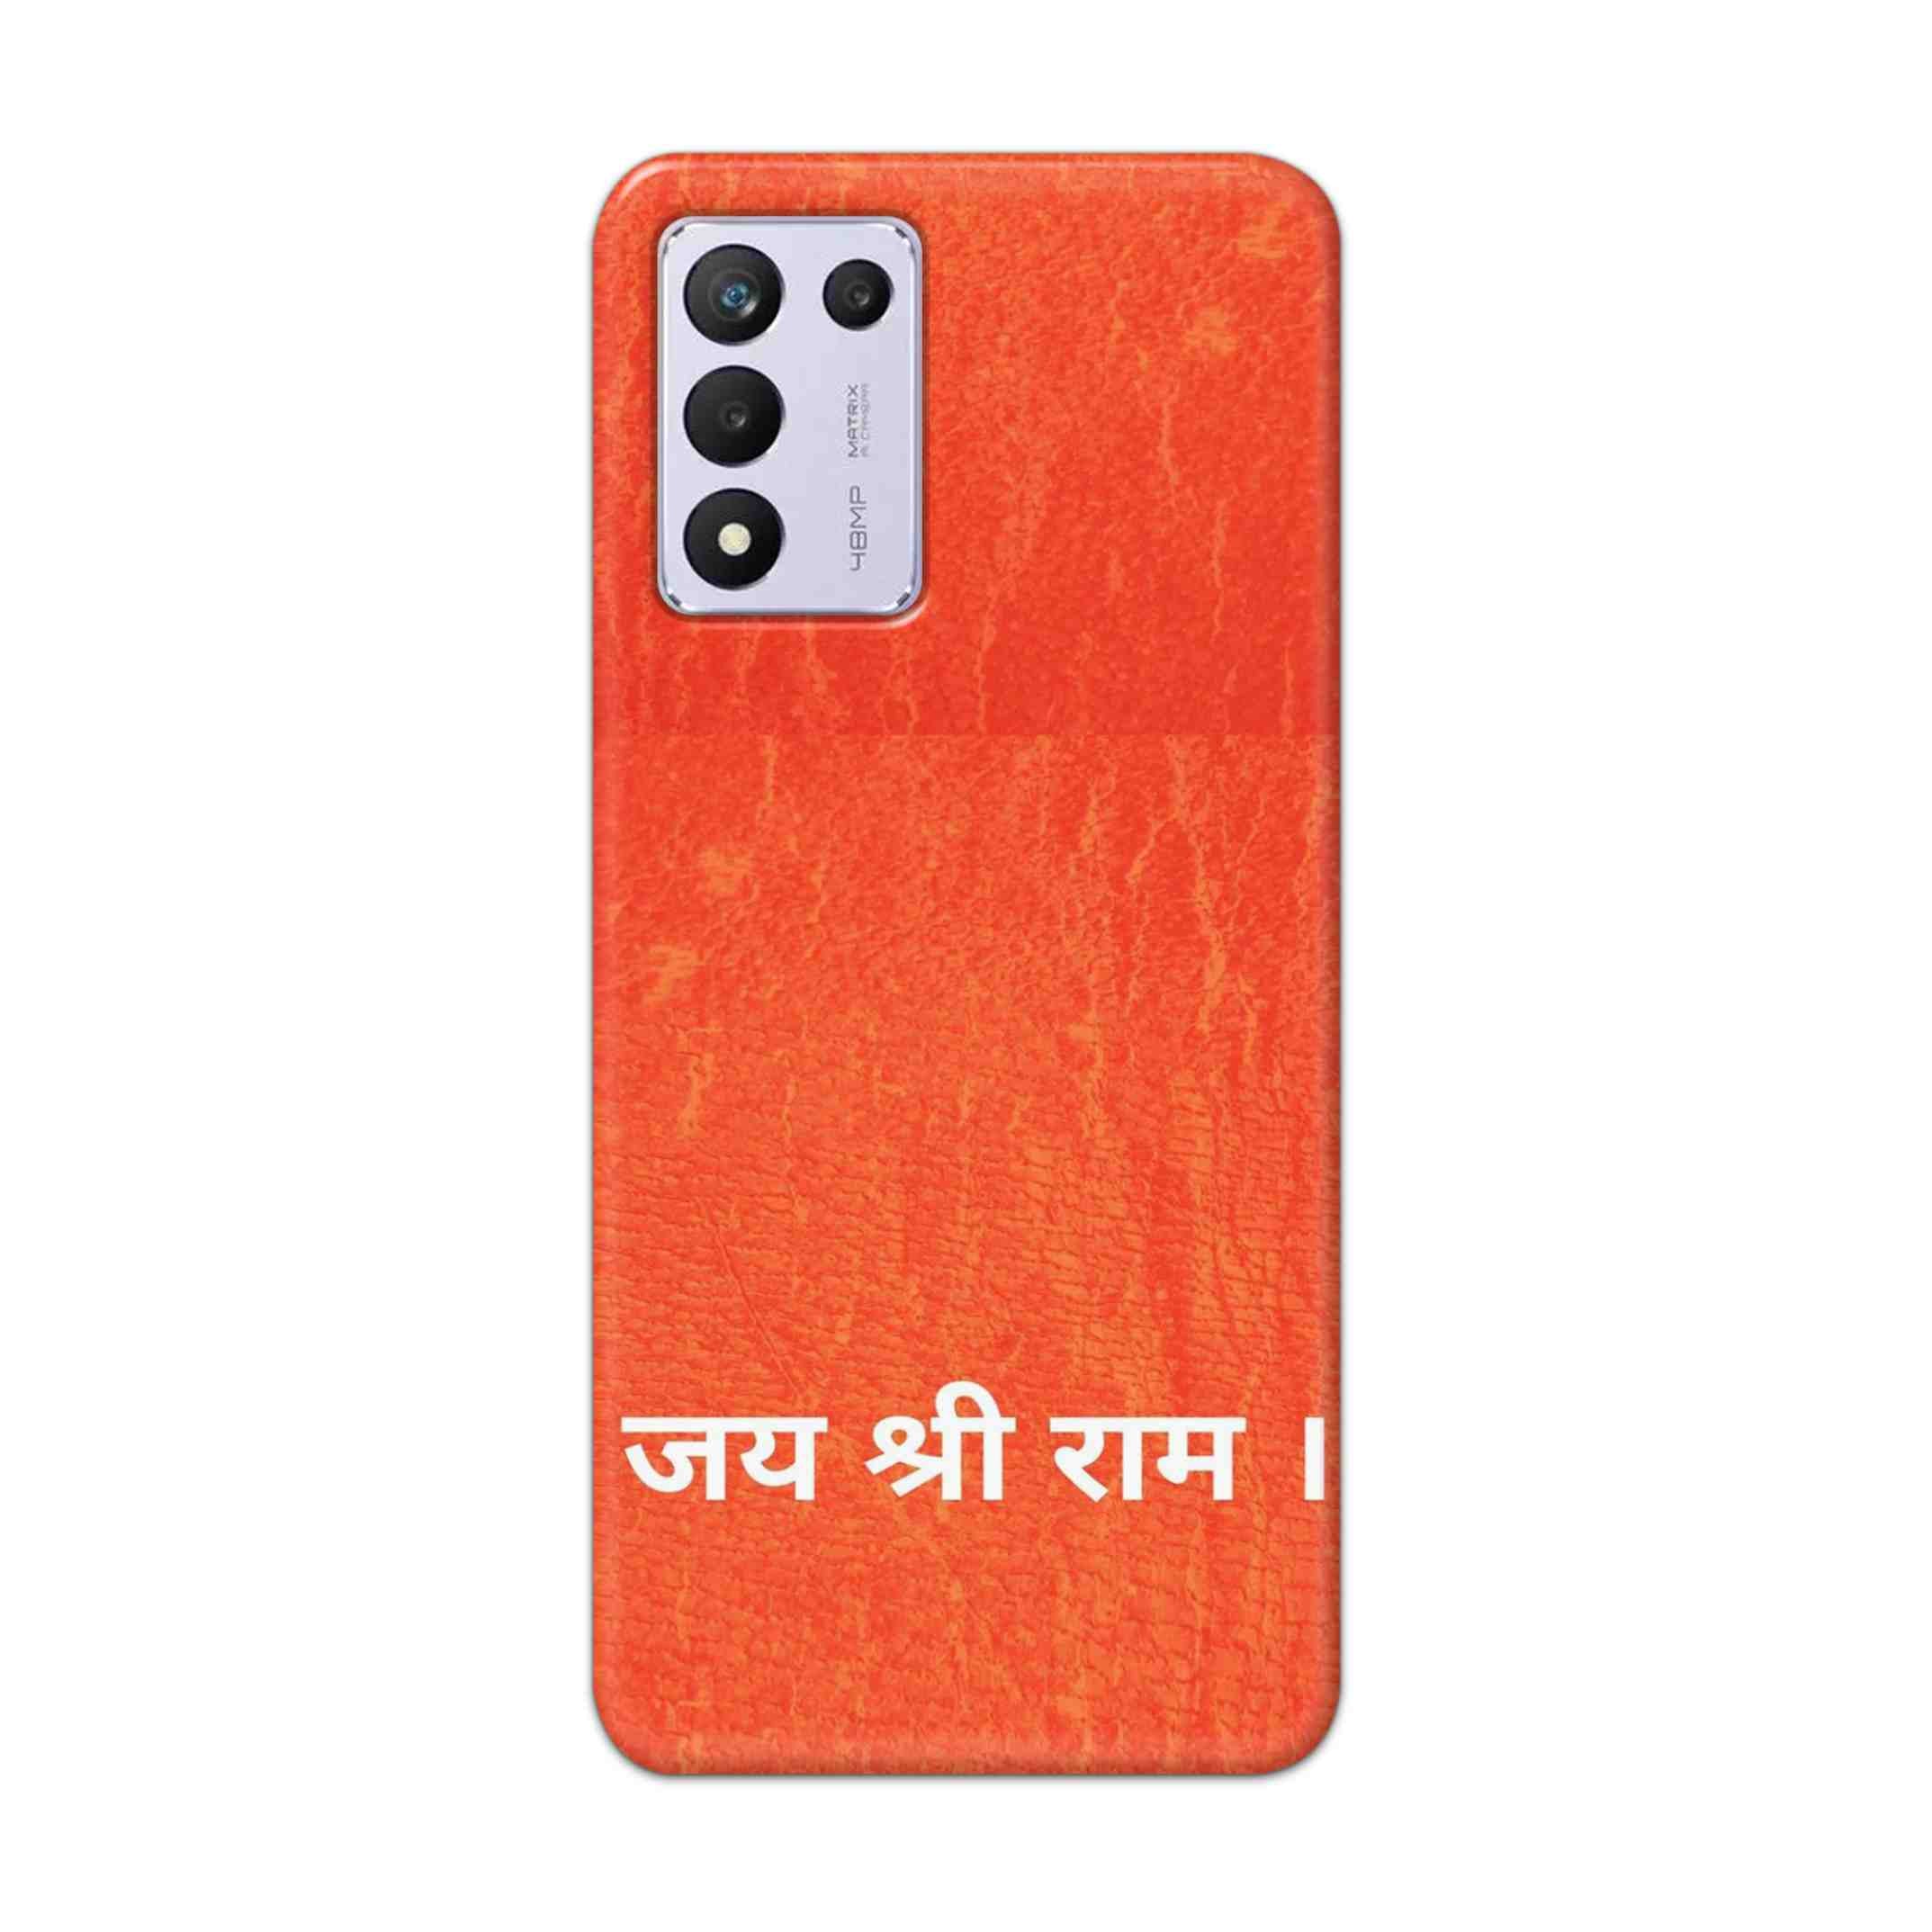 Buy Jai Shree Ram Hard Back Mobile Phone Case/Cover For Realme 9 5G SE Online